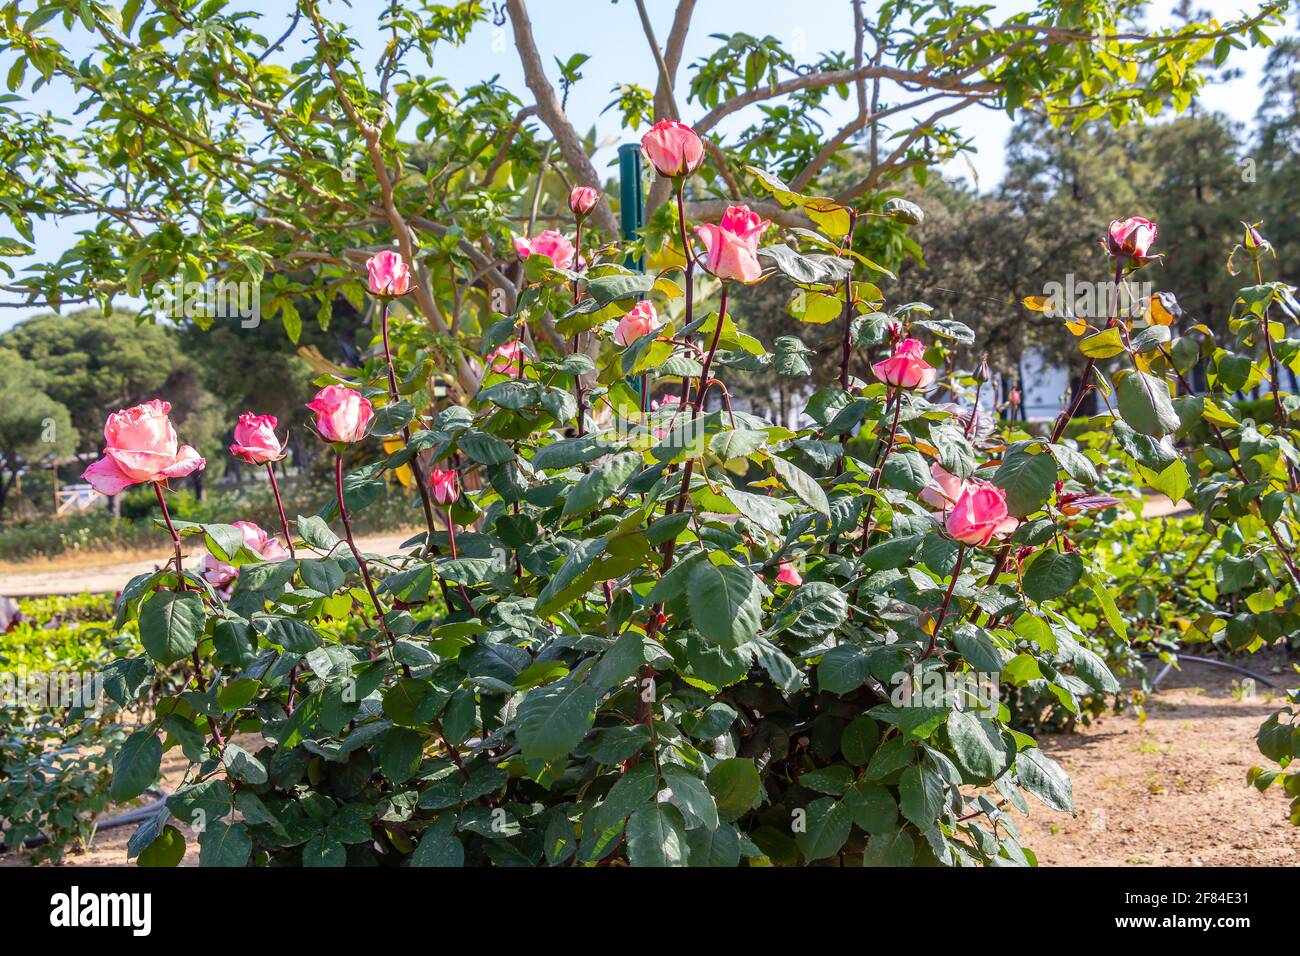 Arbusto de rosas rosadas. El género Rosa está formado por un conocido grupo de arbustos generalmente espinosos y floridos, los principales representantes del Rosac Foto de stock